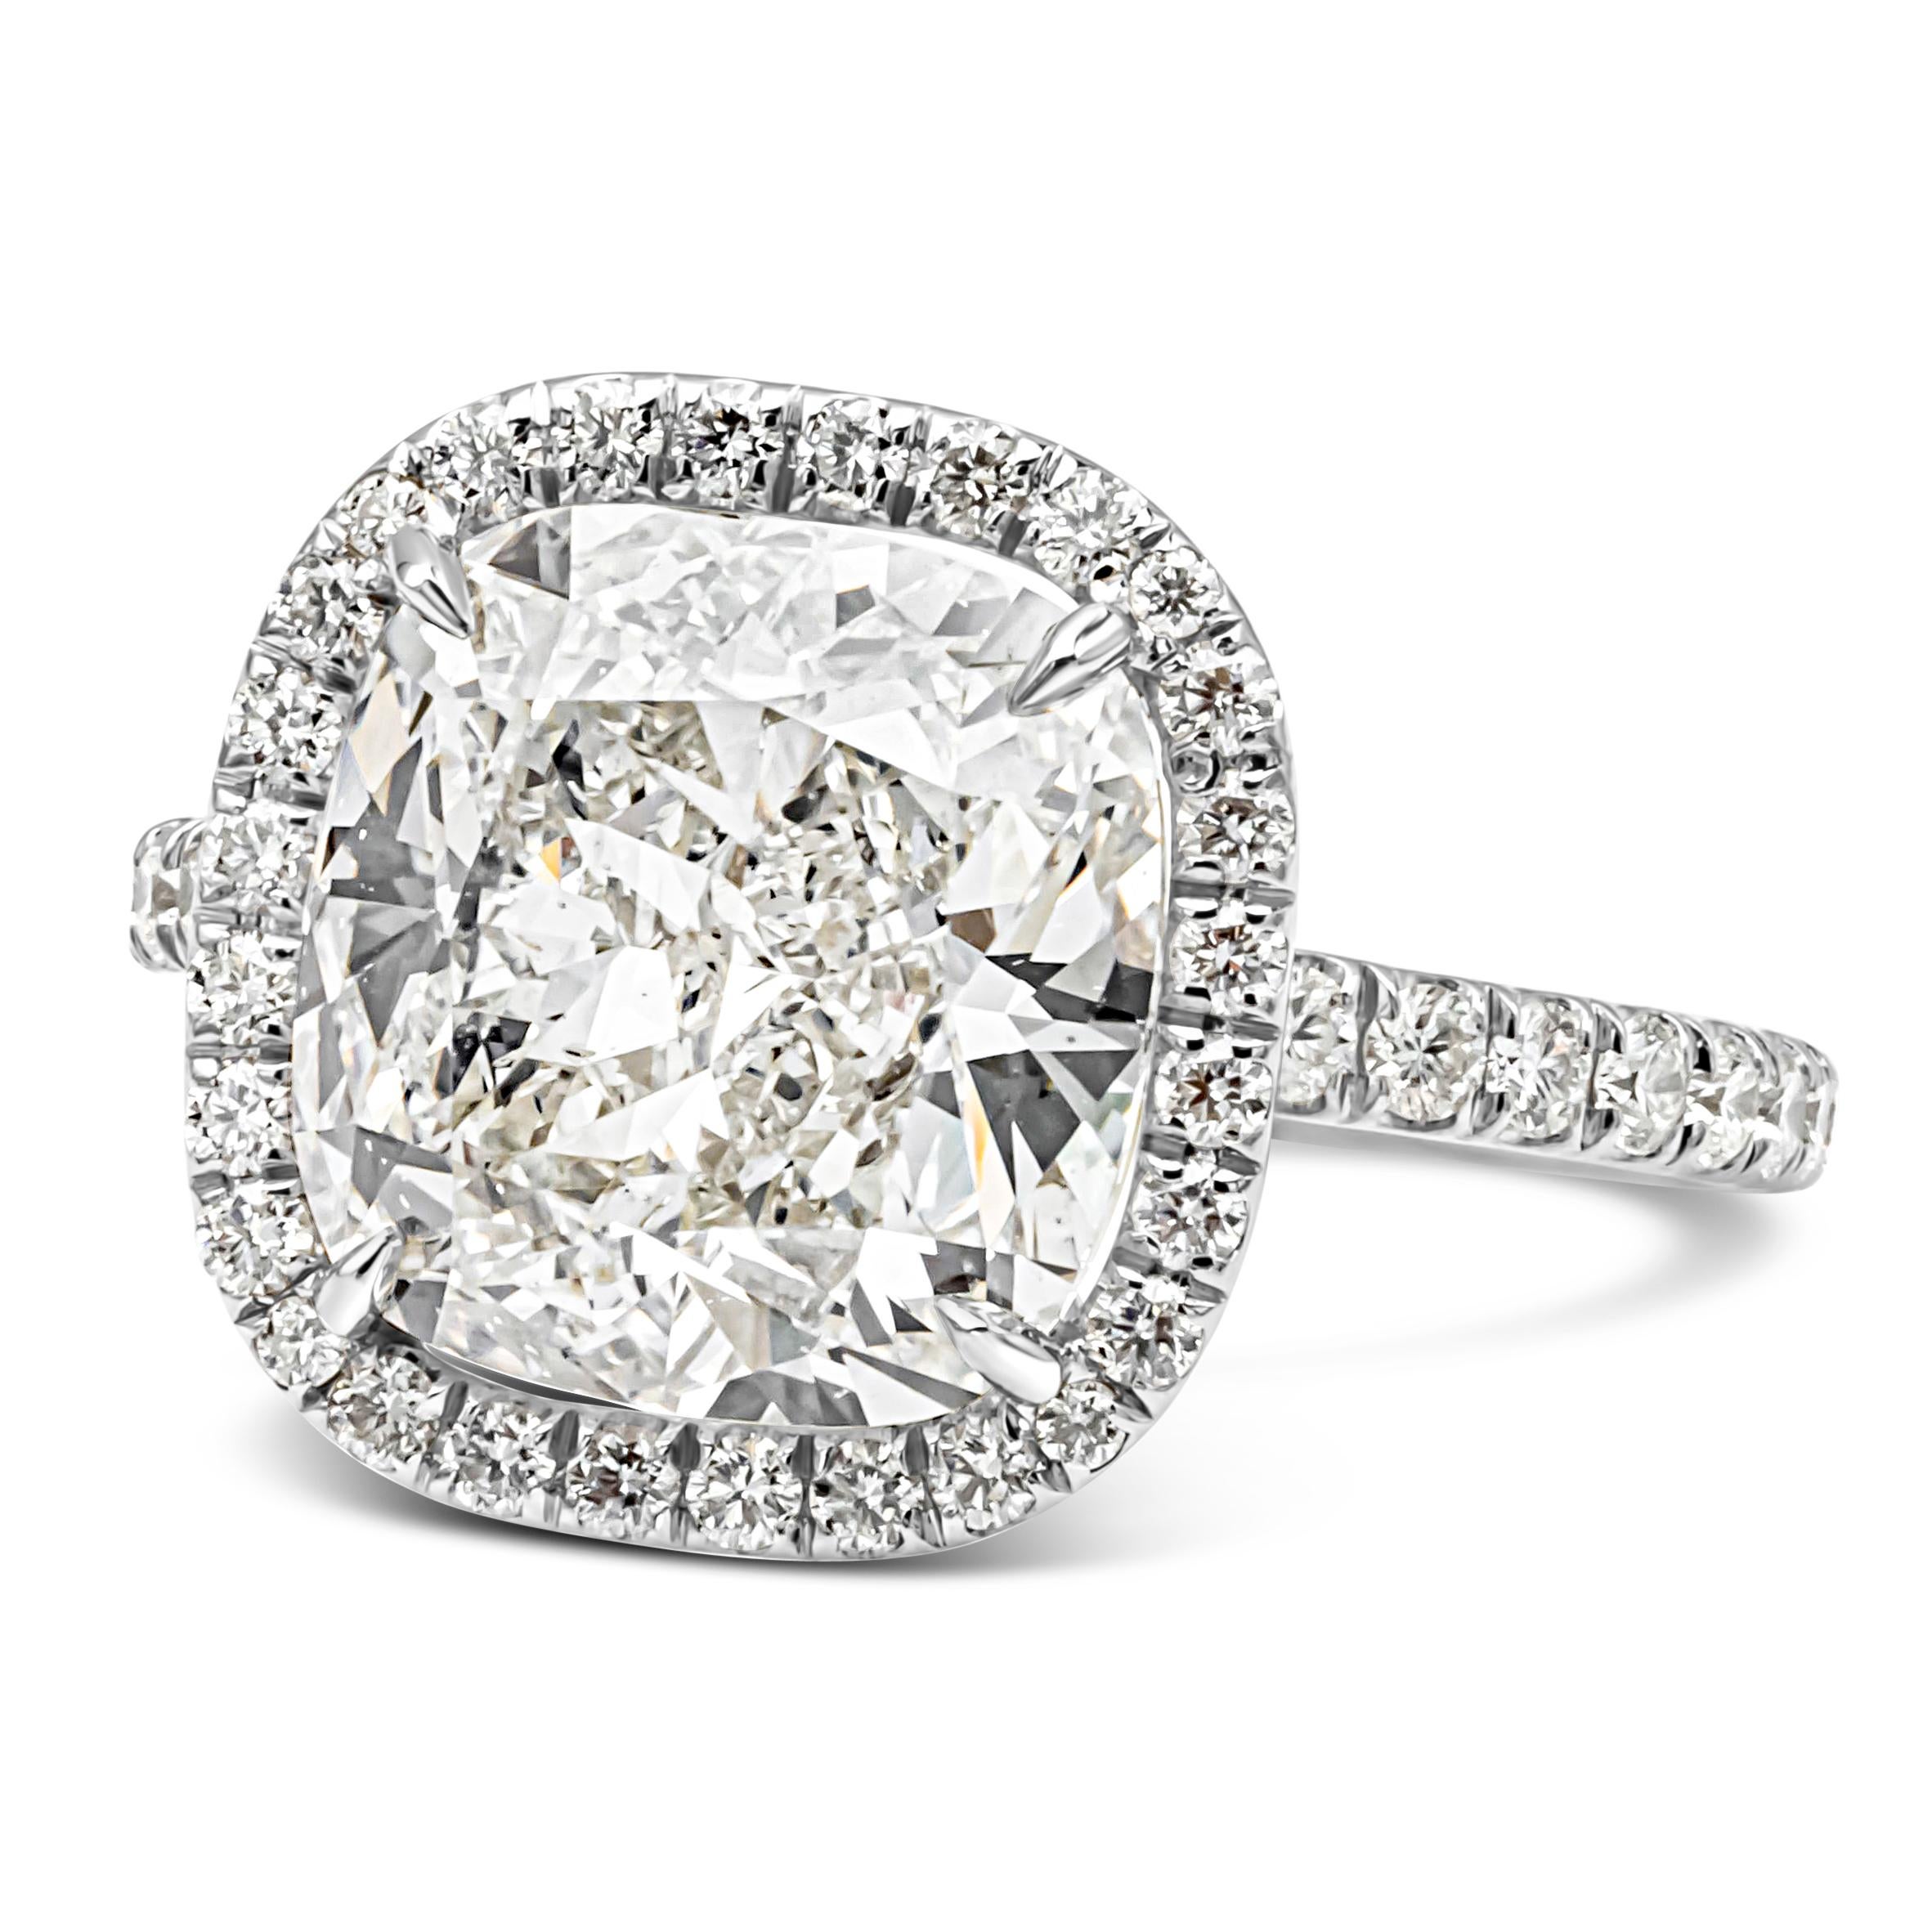 Dieser elegante und wunderschöne Halo-Verlobungsring besteht aus einem 5,19 Karat schweren Diamanten mit Kissenschliff, der von GIA als J-Farbe und SI1-Klarheit zertifiziert und in einer vierzackigen Korbfassung gefasst ist. Umgeben von 48 runden